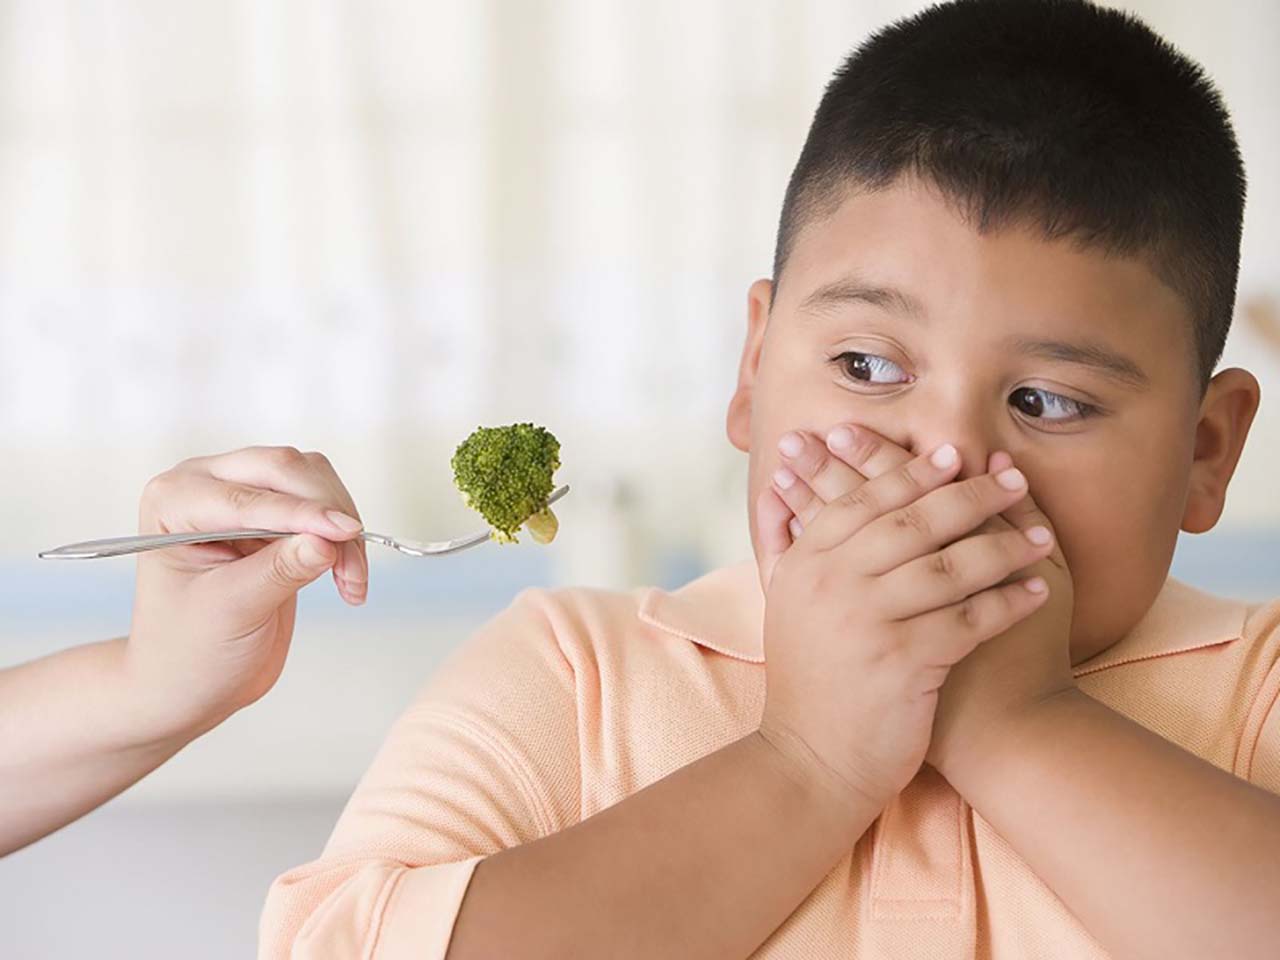 Chế độ ăn cho trẻ bị béo phì cần được tăng cường thêm rau xanh